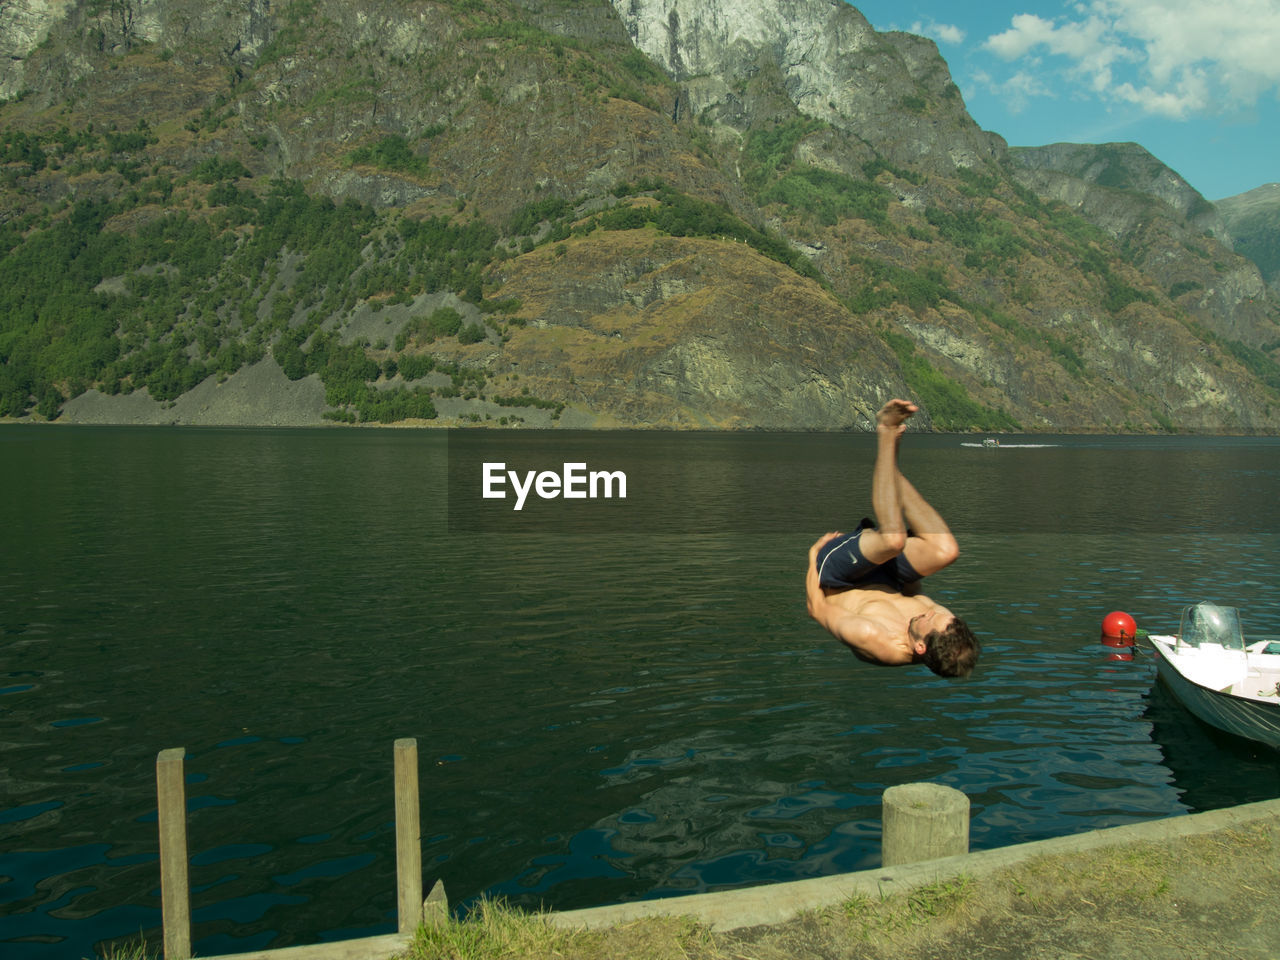 Shirtless man diving in lake by mountain